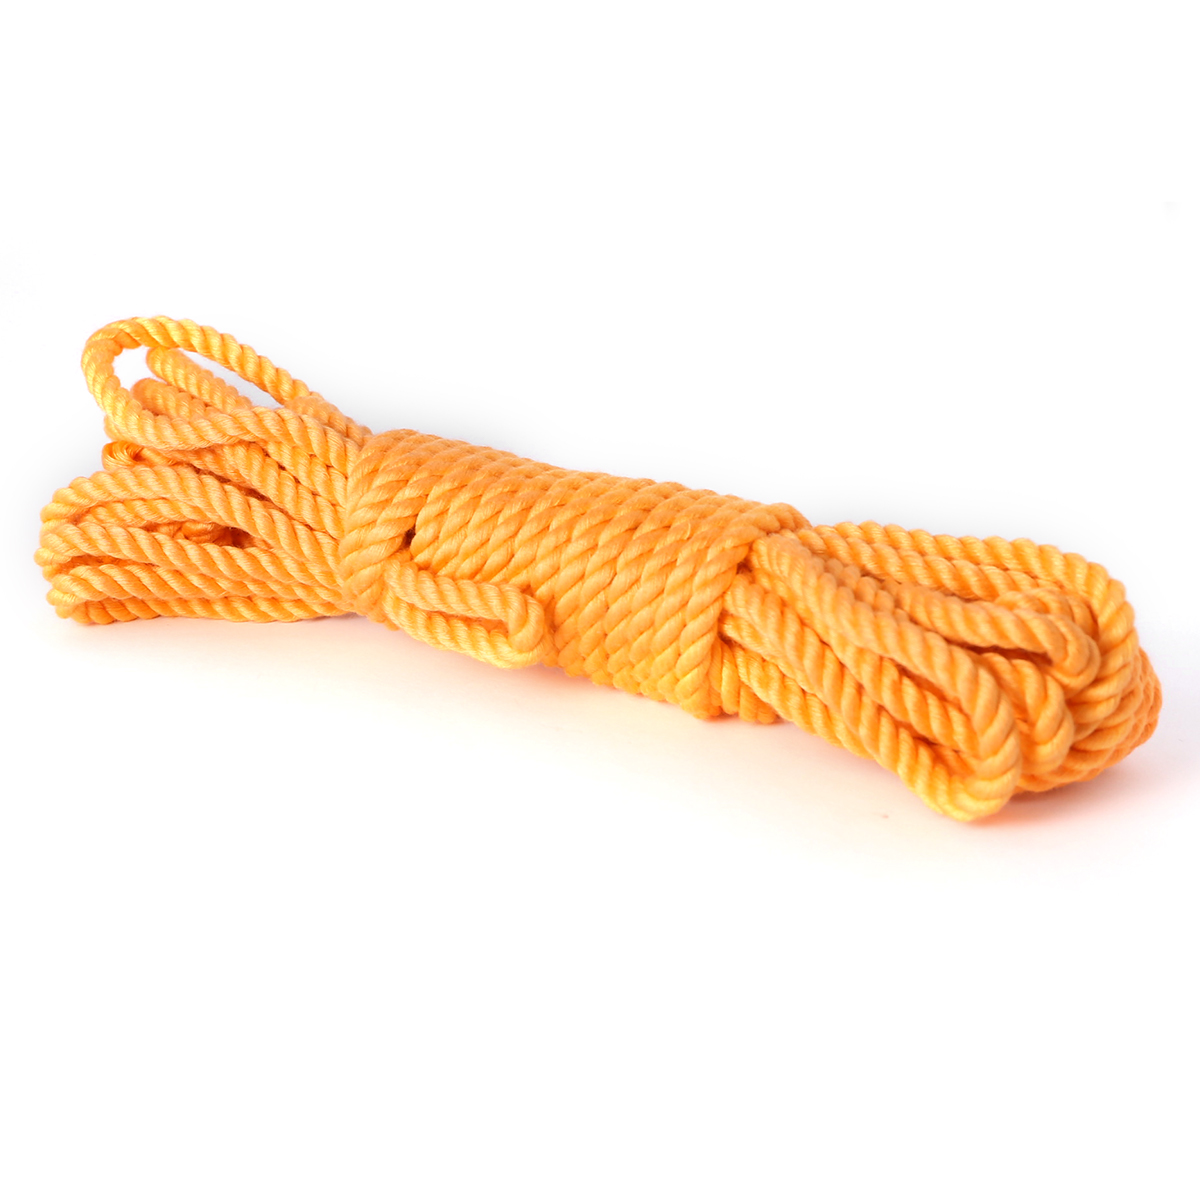 8m corda de seda de bambu artesanal fêmea adulto sexo escravos bdsm bondage macio adulto jogos de ligação corda rpg sexo brinquedo